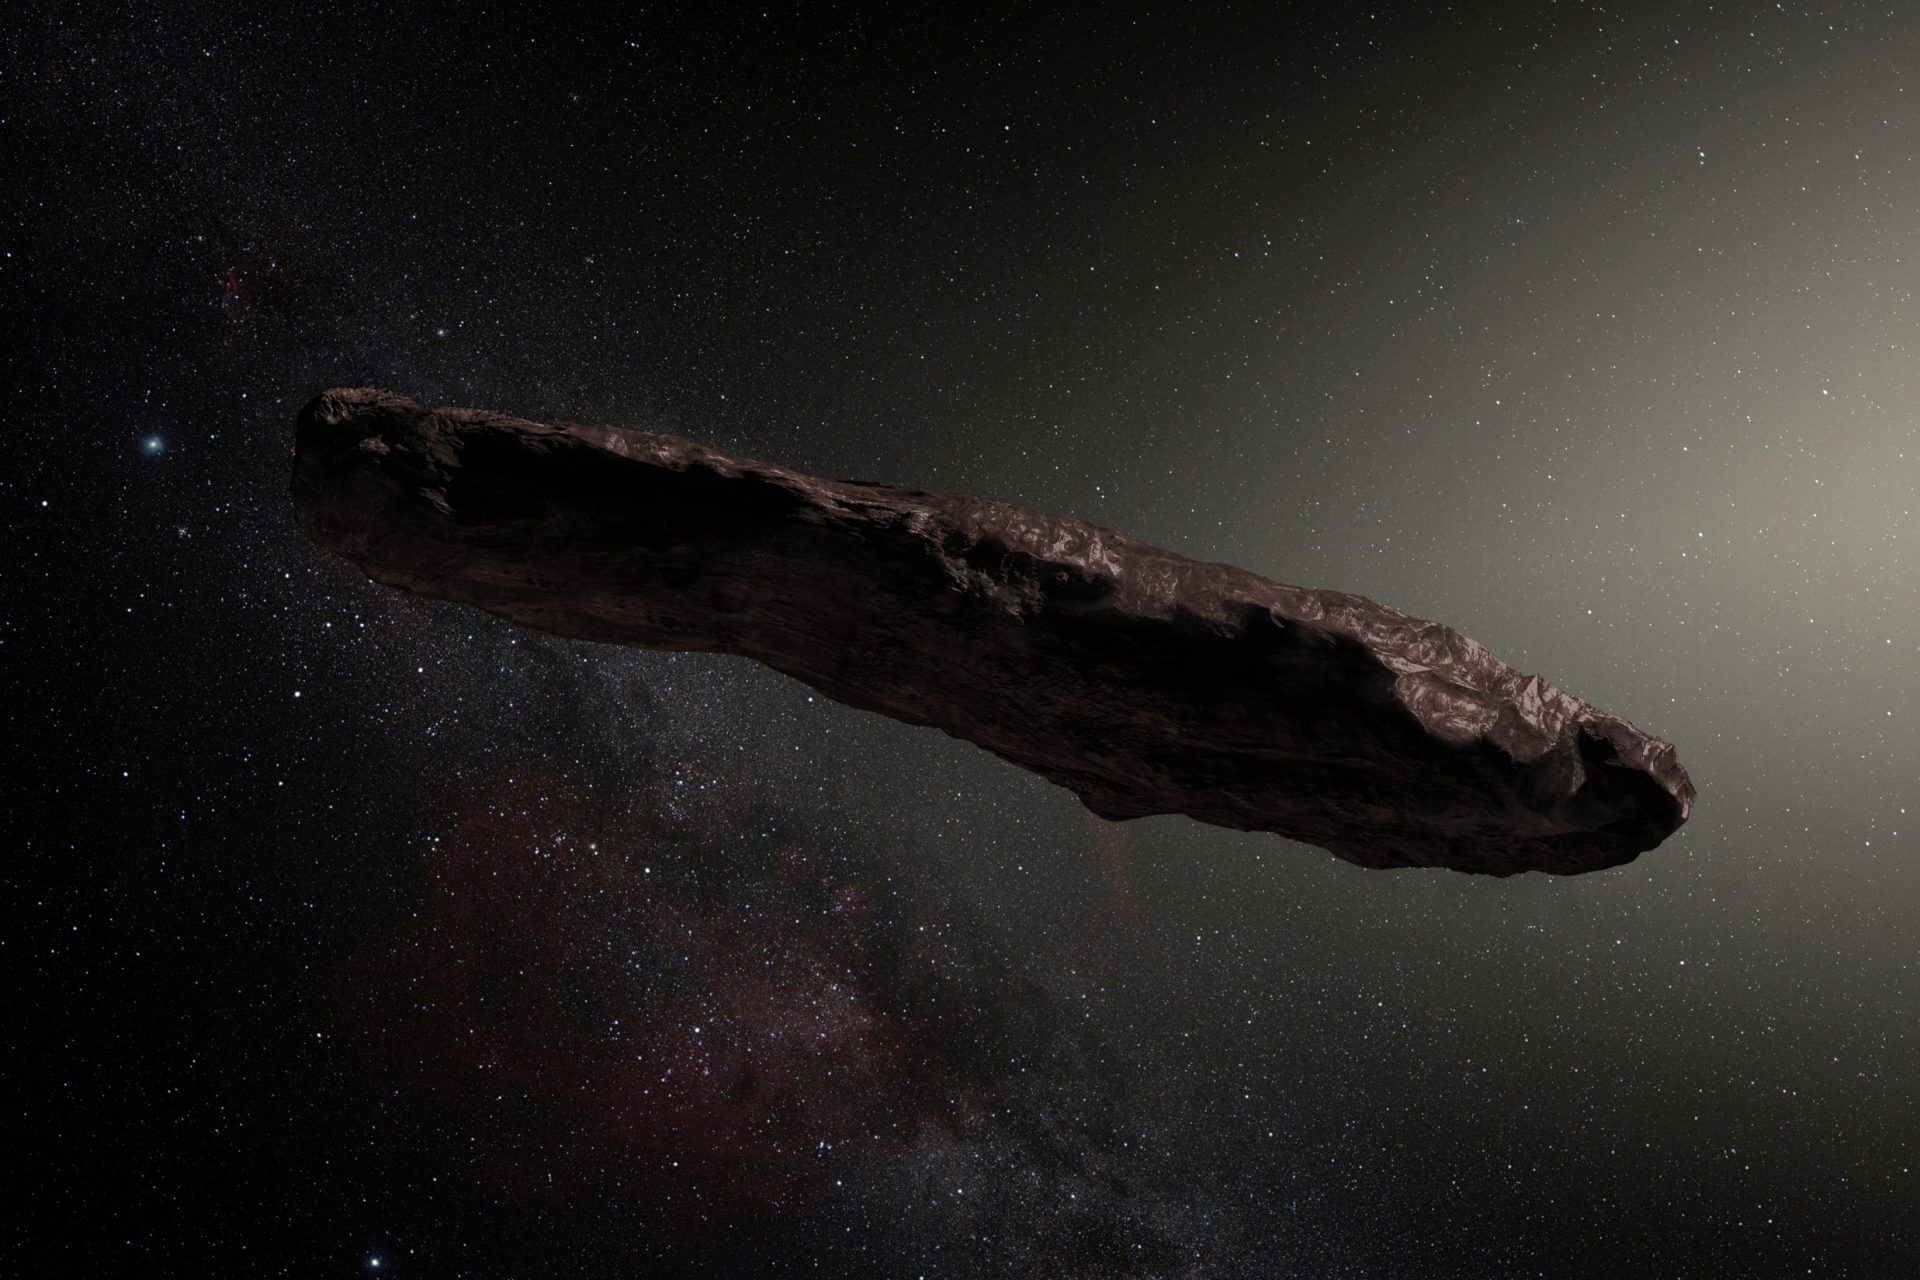 The comet Oumuamua